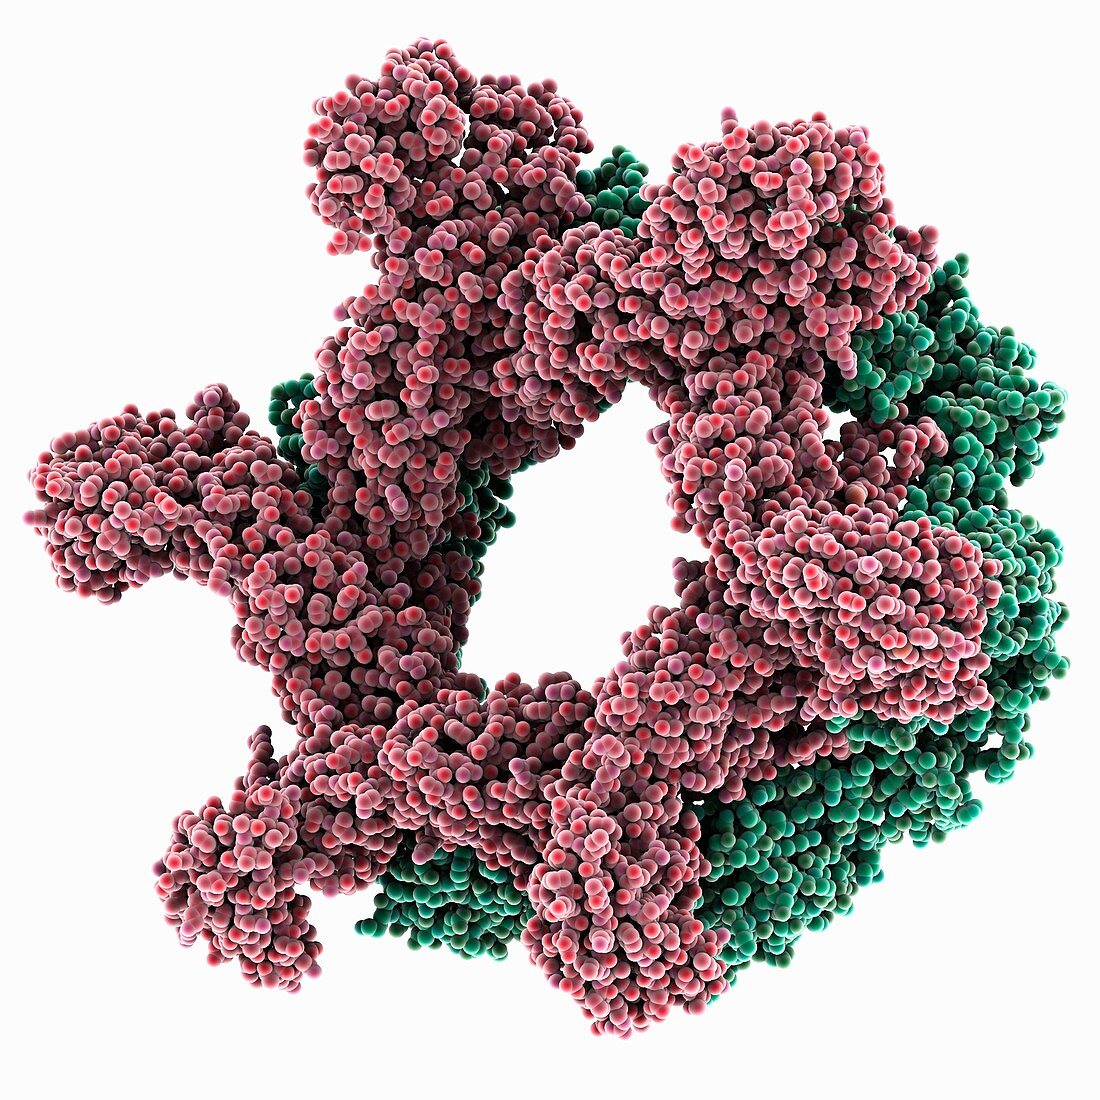 Rift Valley fever virus glycoprotein, molecular model